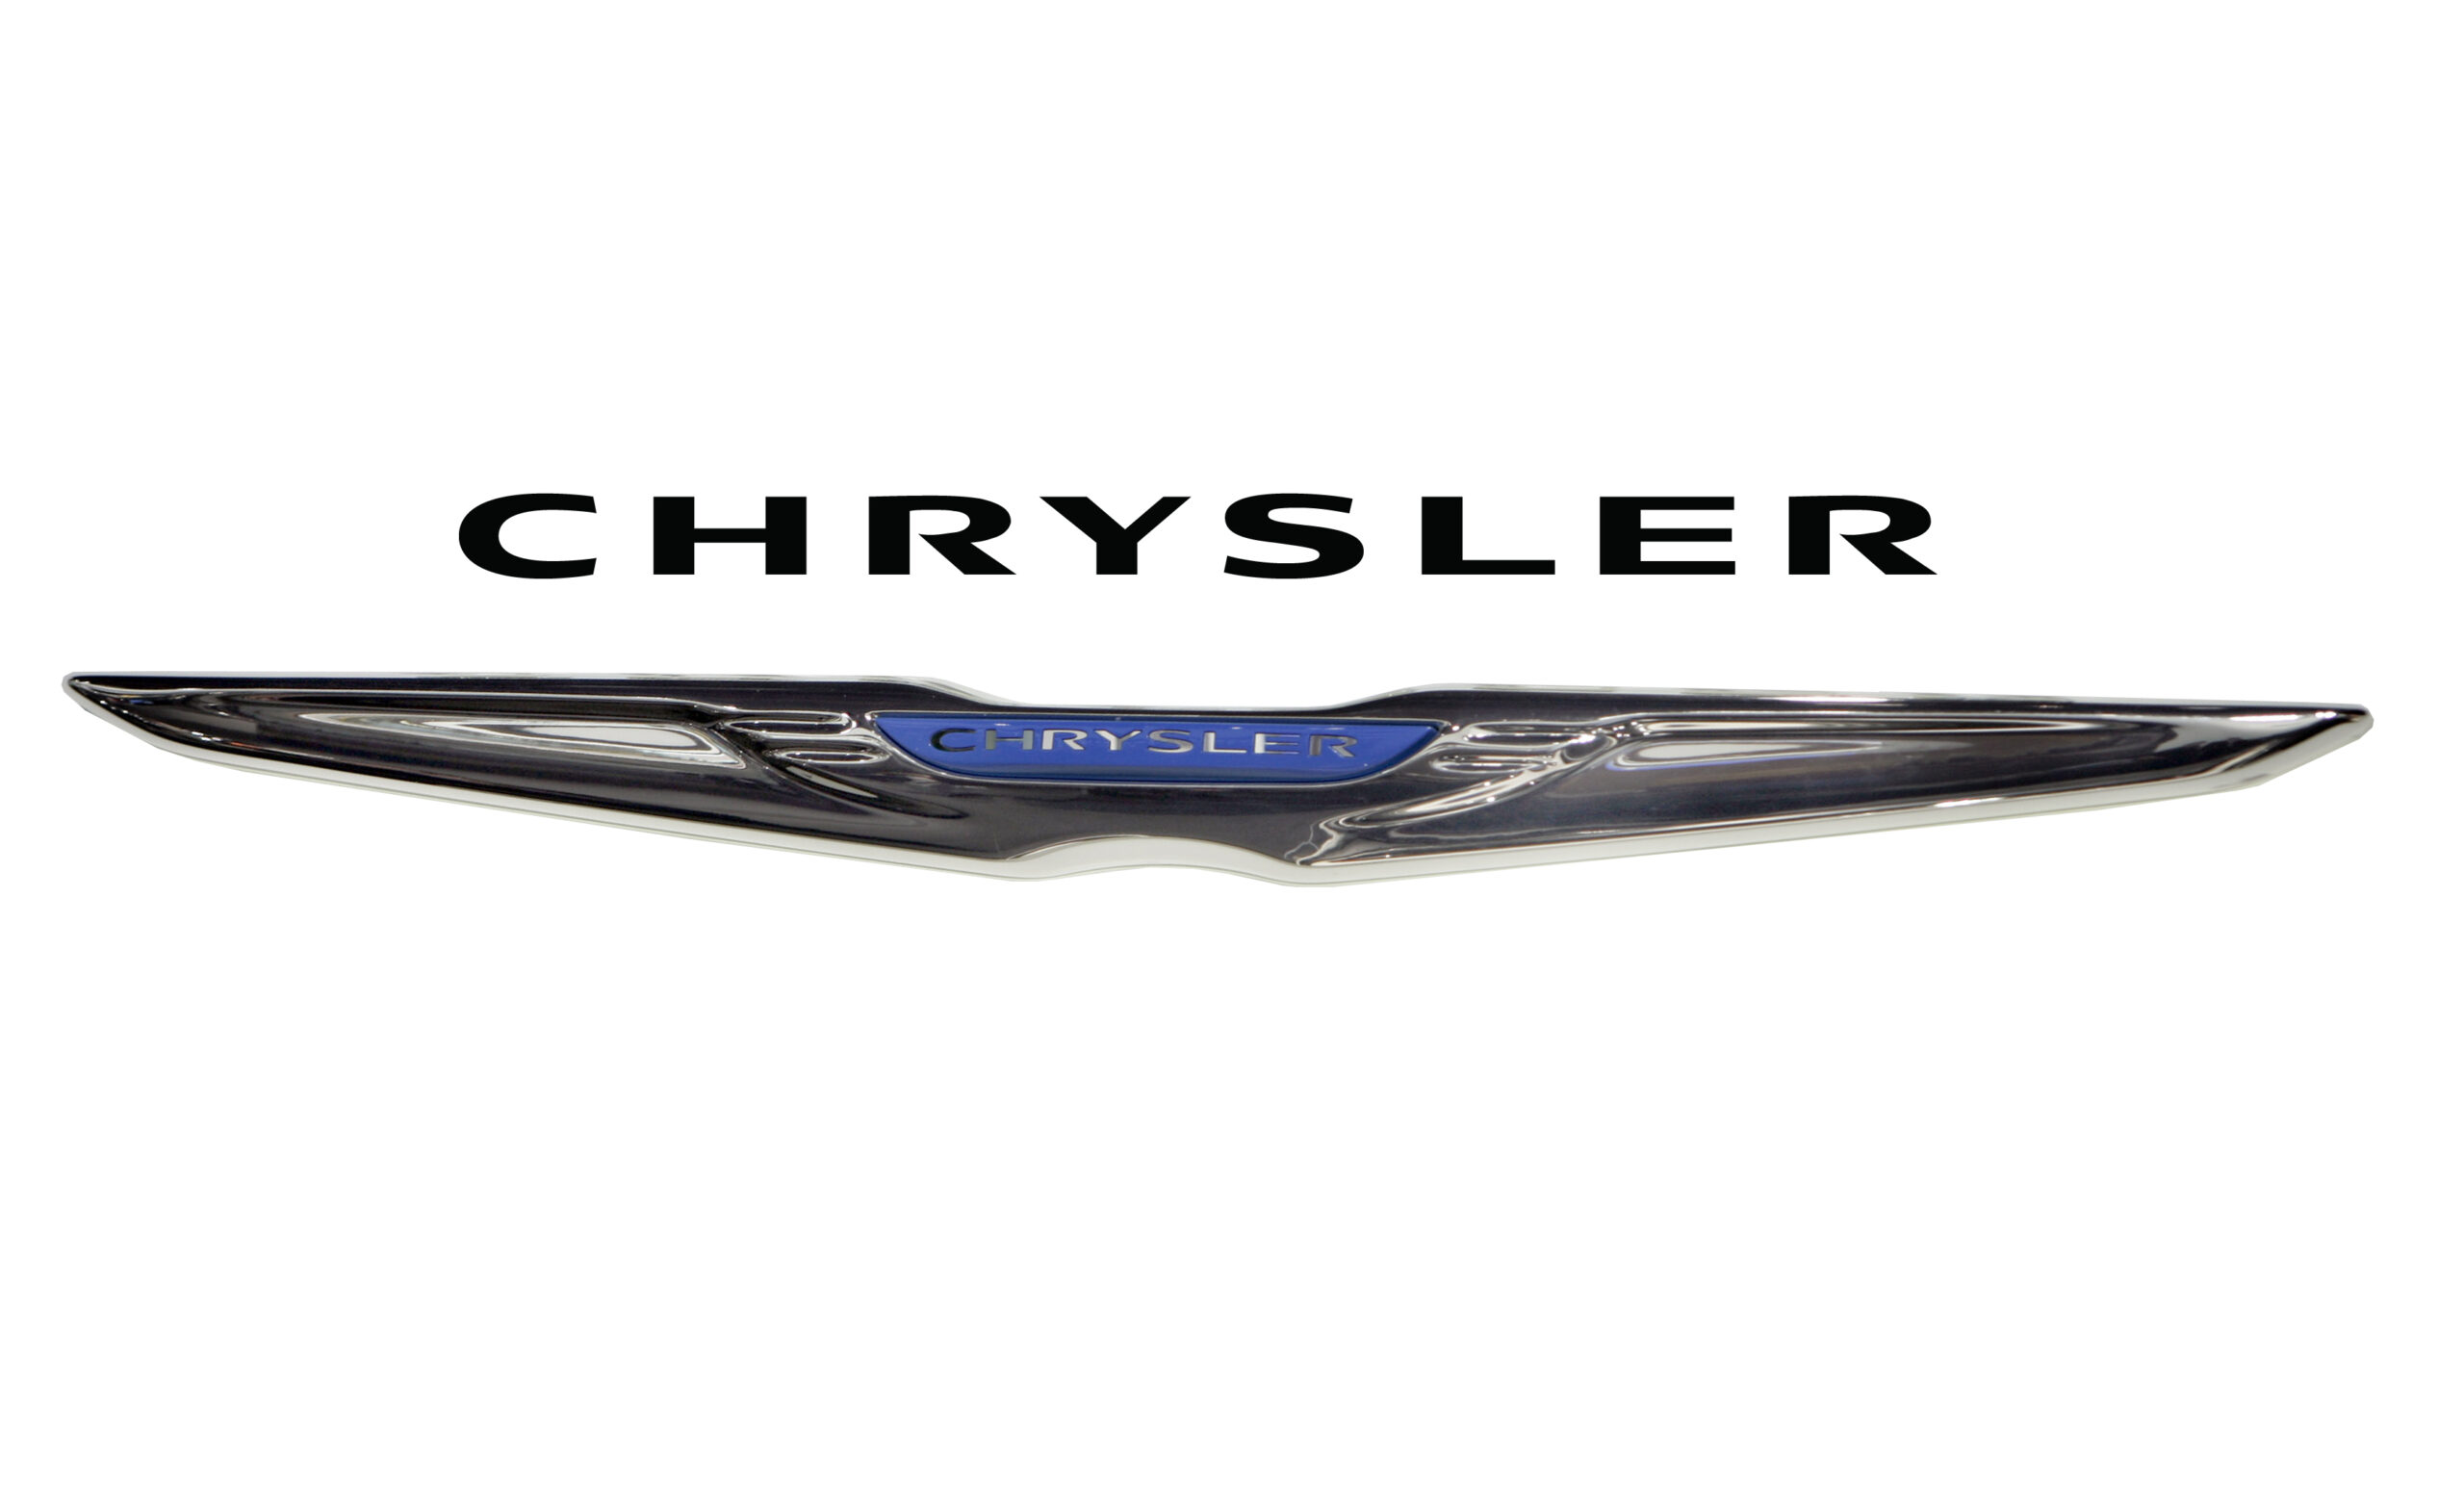 Classic Chrysler logo